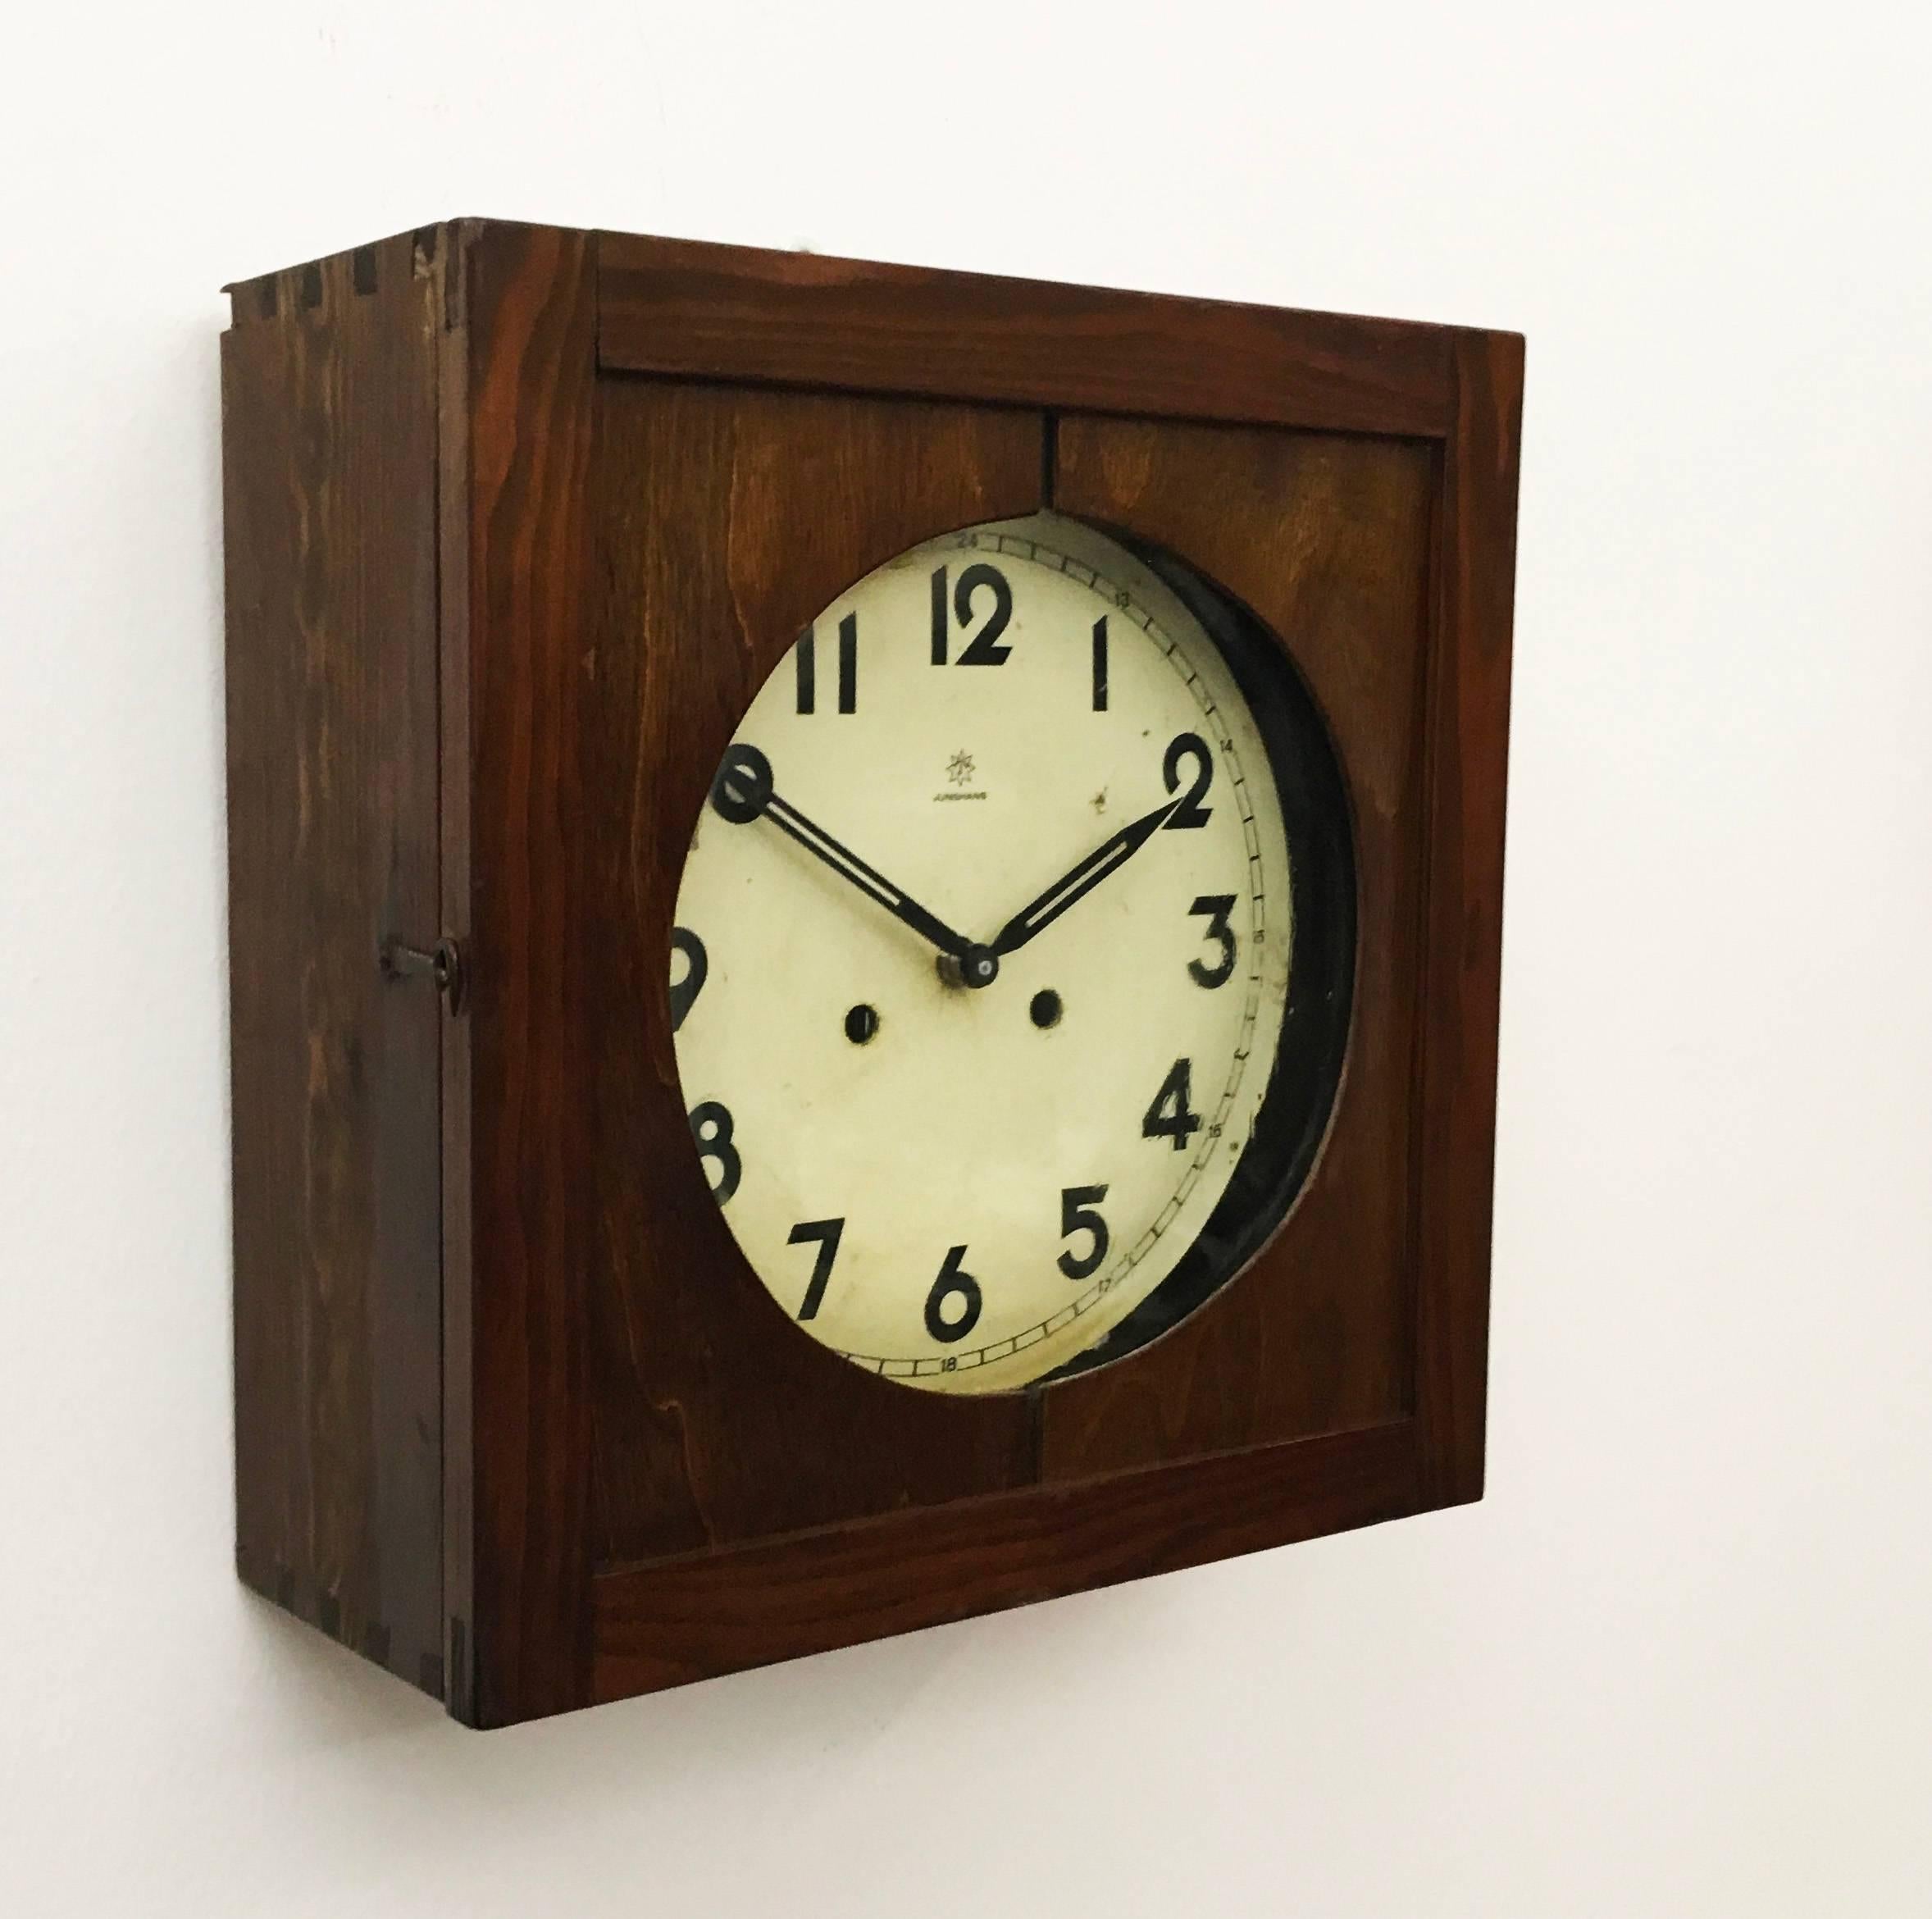 Boîte en bois, cadran de l'horloge avec chiffres arabes, mouvement à pile neuf restauré.